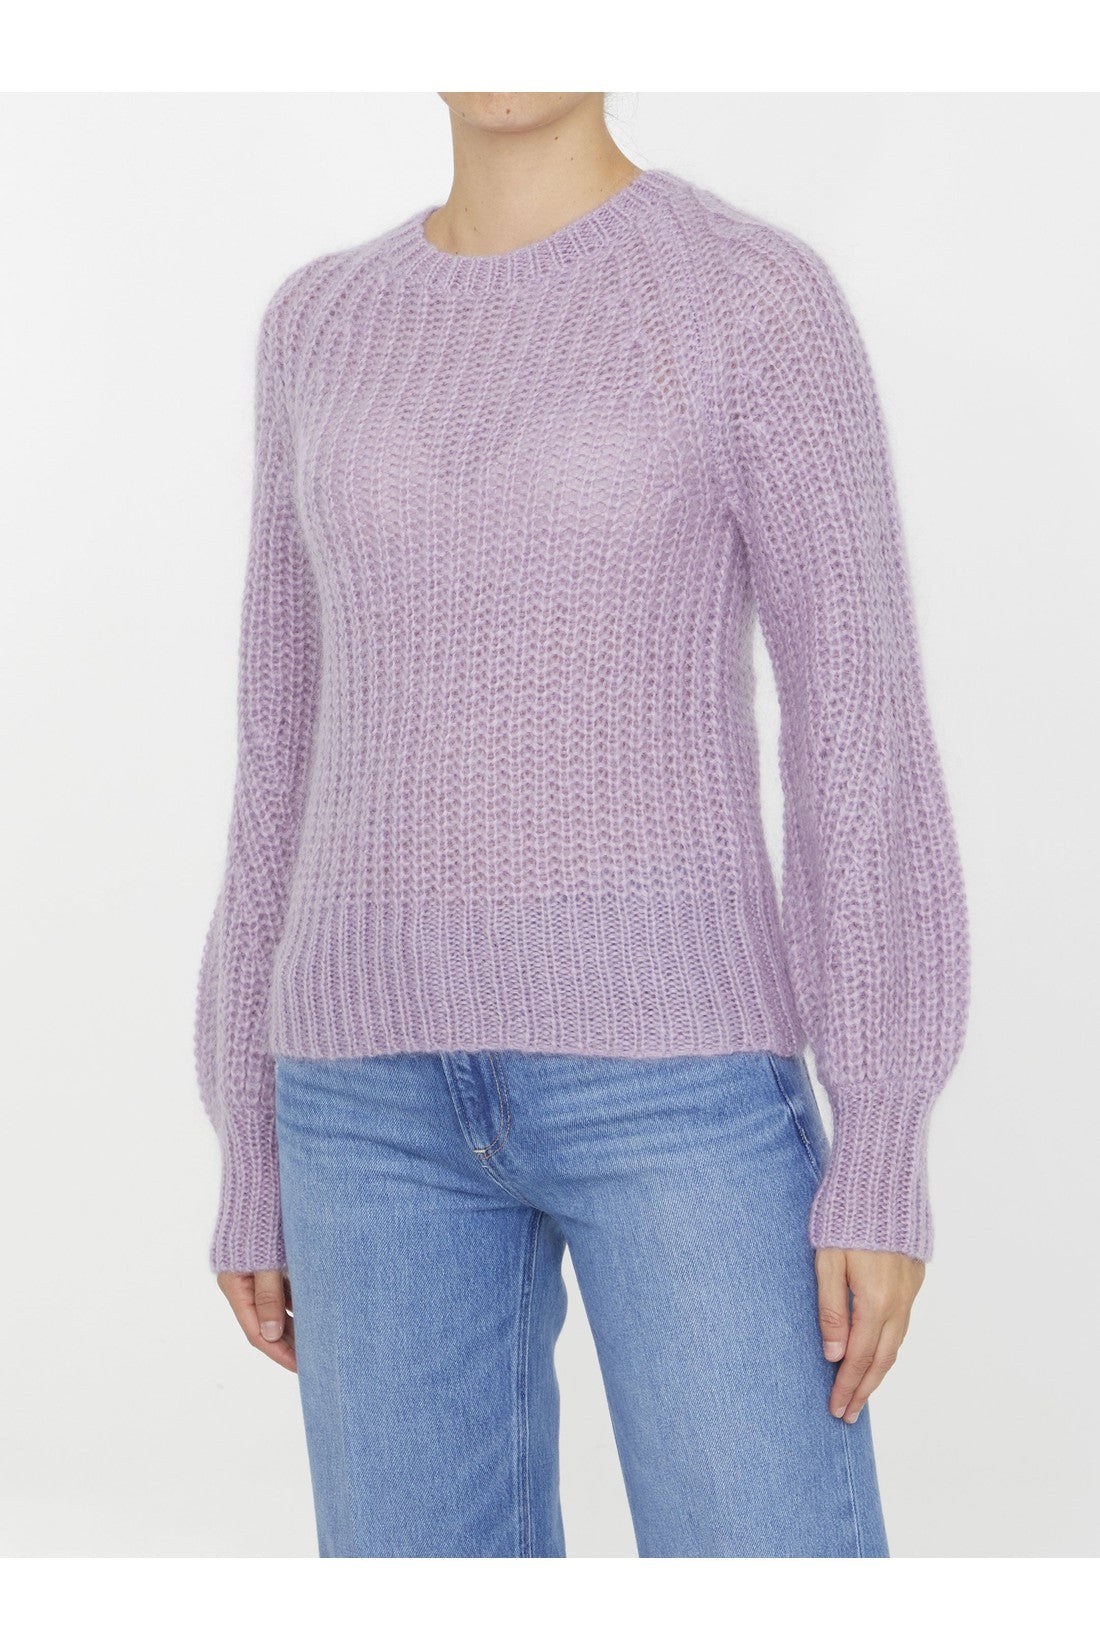 Luminosity Raglan sweater